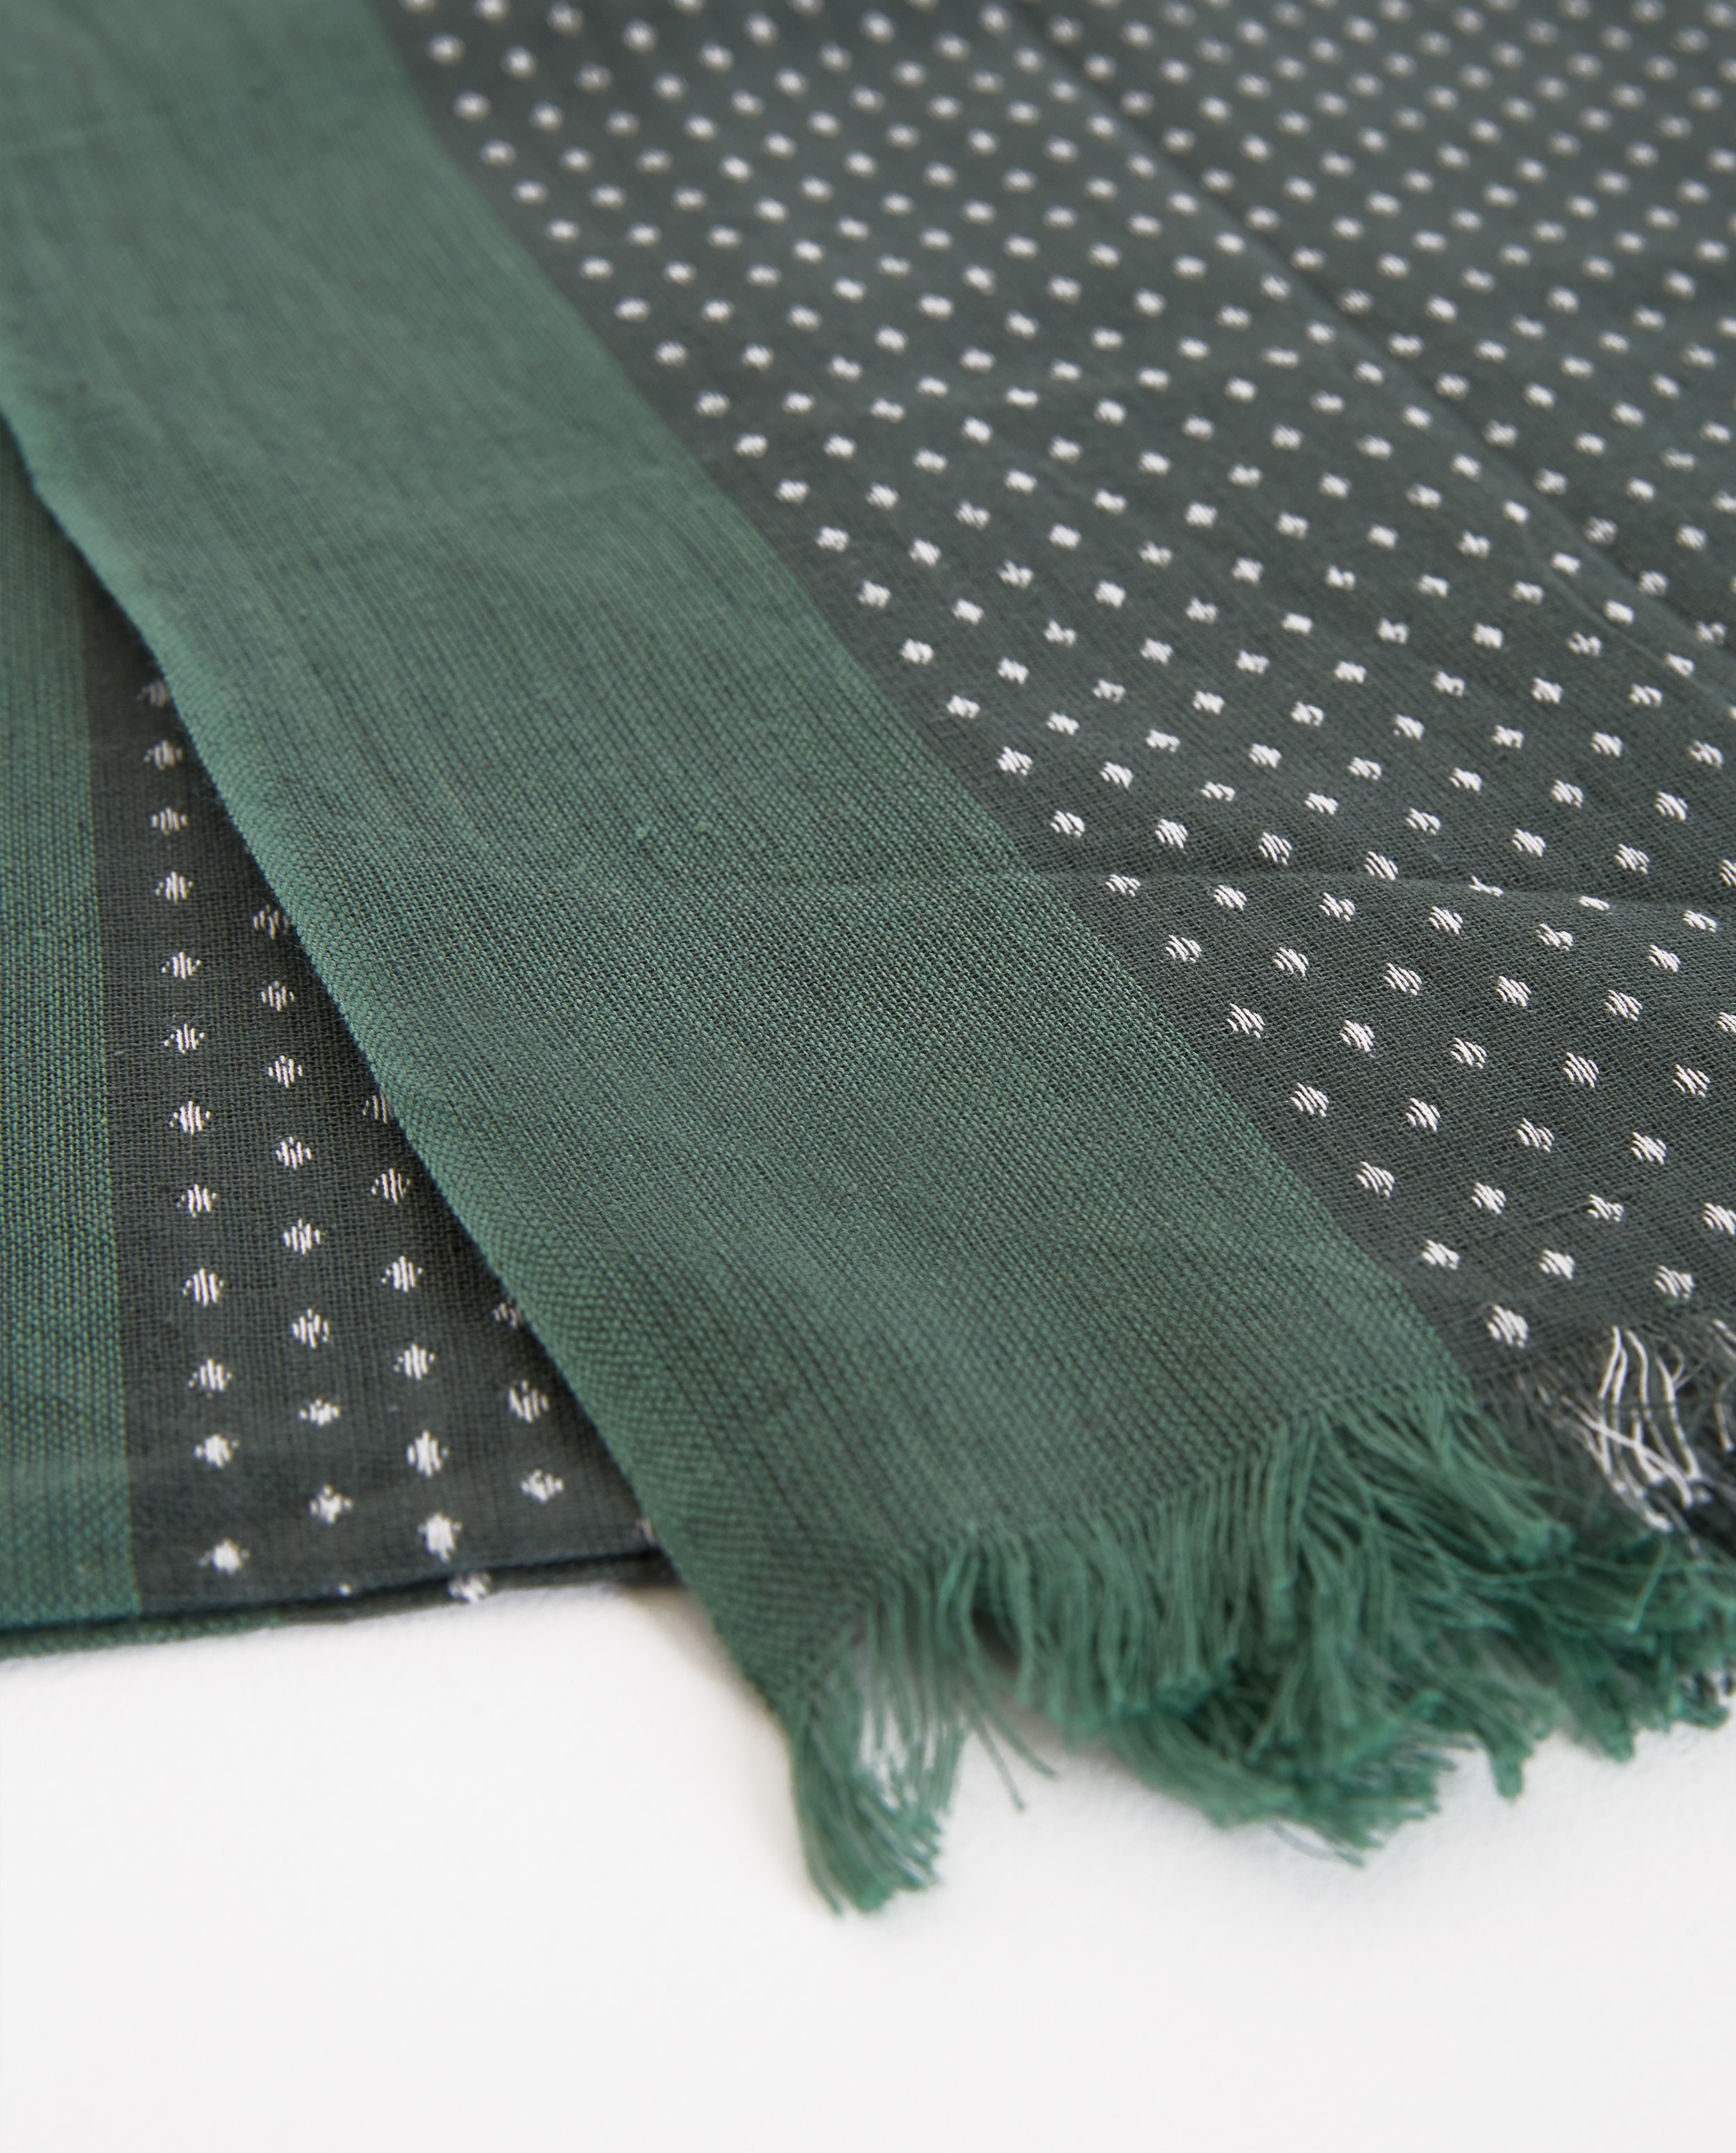 Breigoed - Groene sjaal met motief